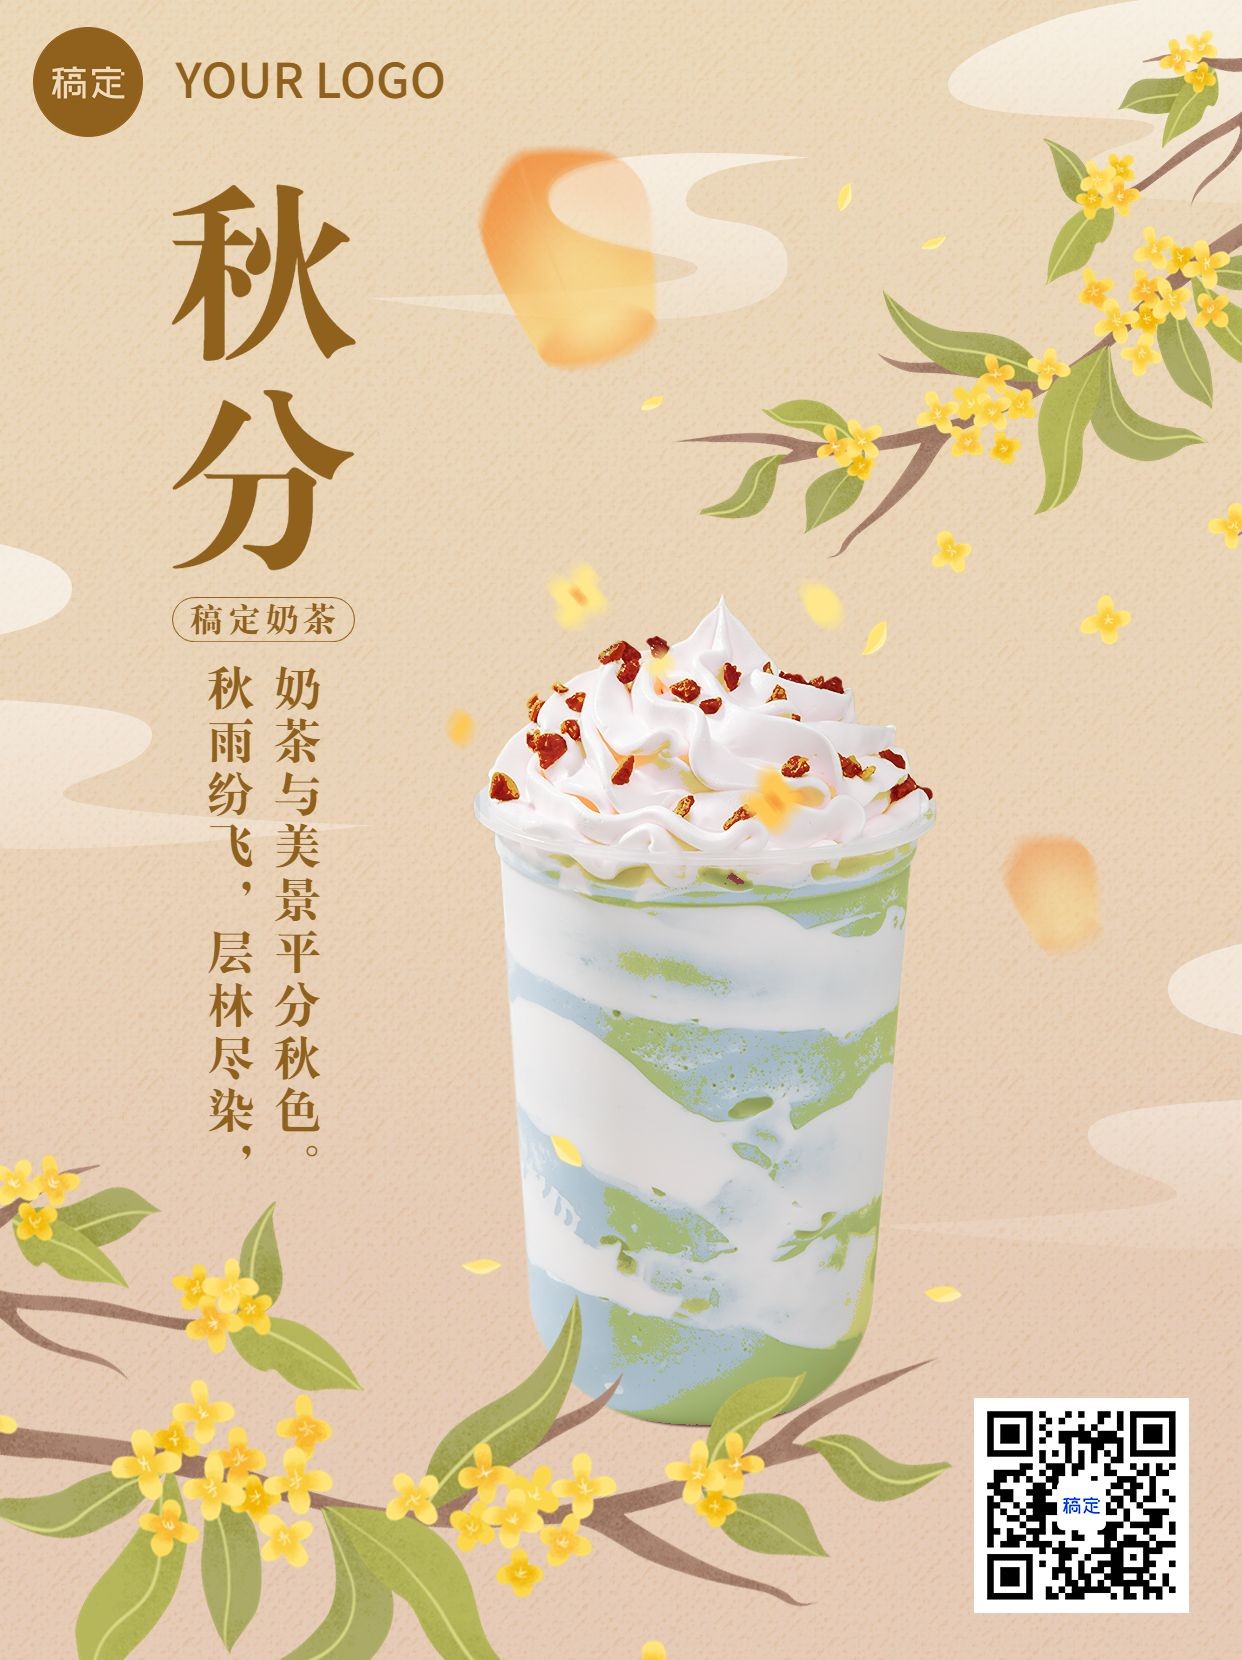 秋分奶茶产品营销手绘插画小红书配图预览效果